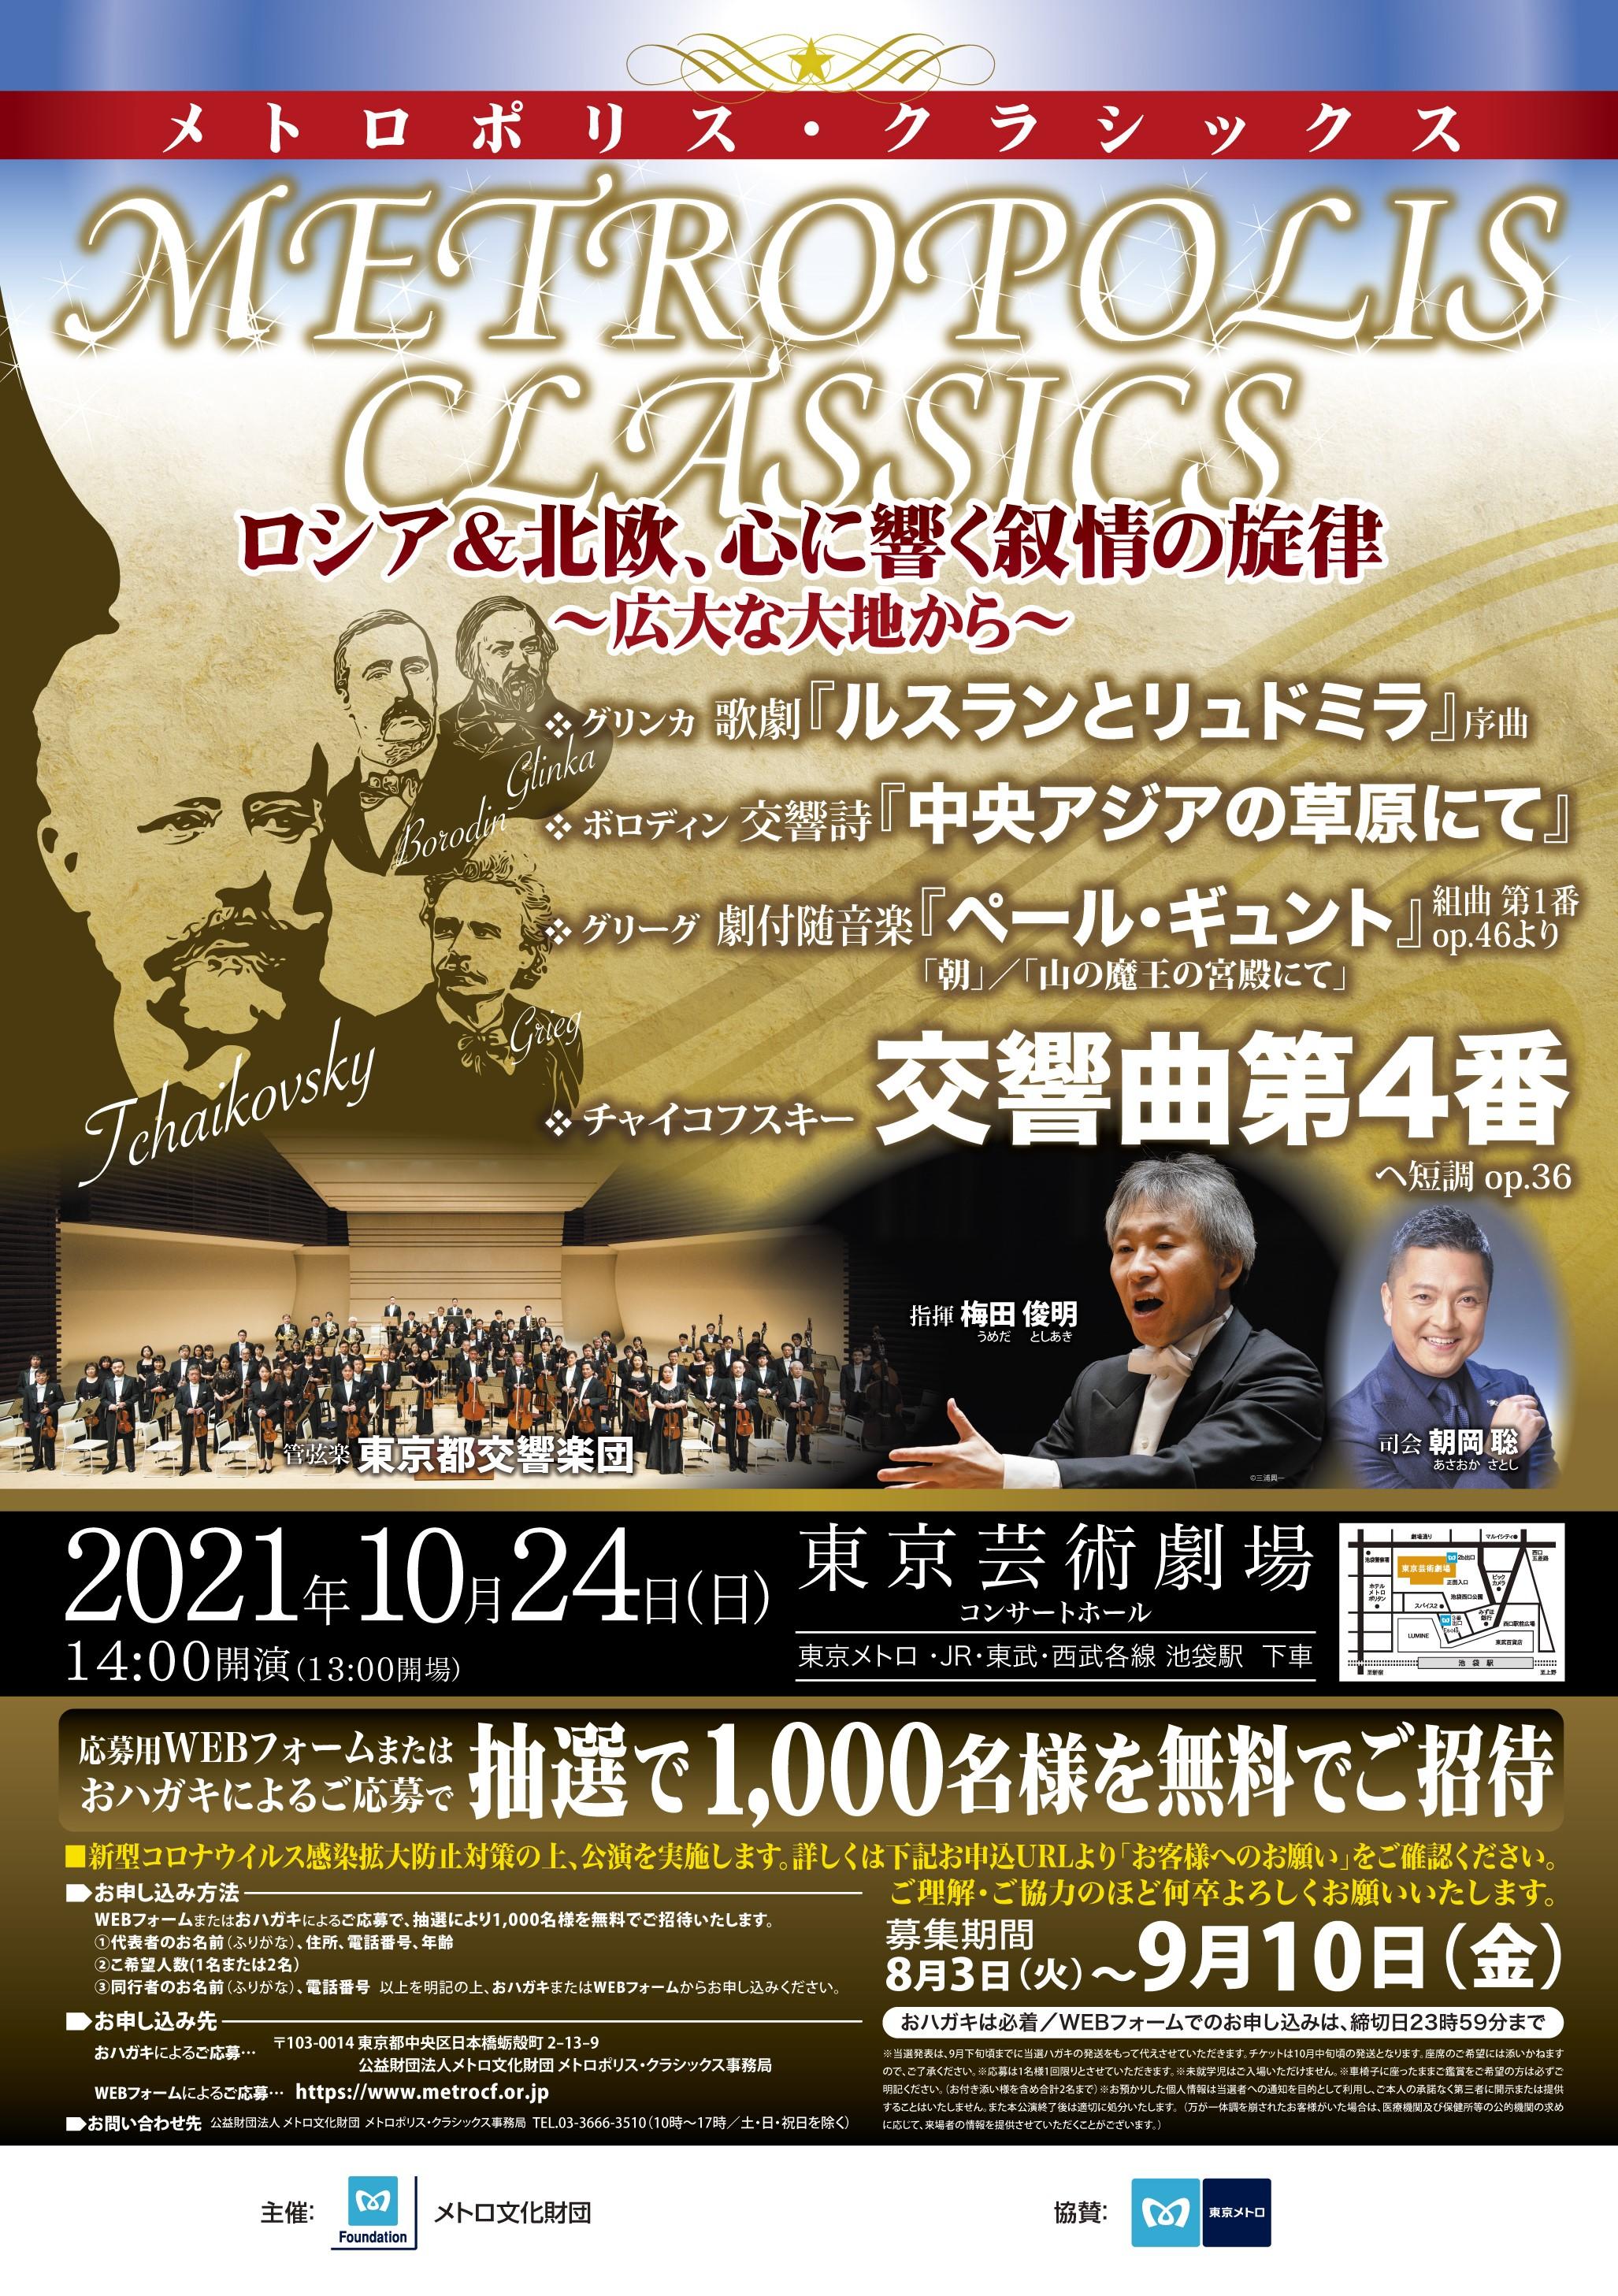 東京メトロ：2021年10月24日（日）開催の「メトロポリス・クラシックス」コンサートに協賛　今年は抽選で1,000名を招待